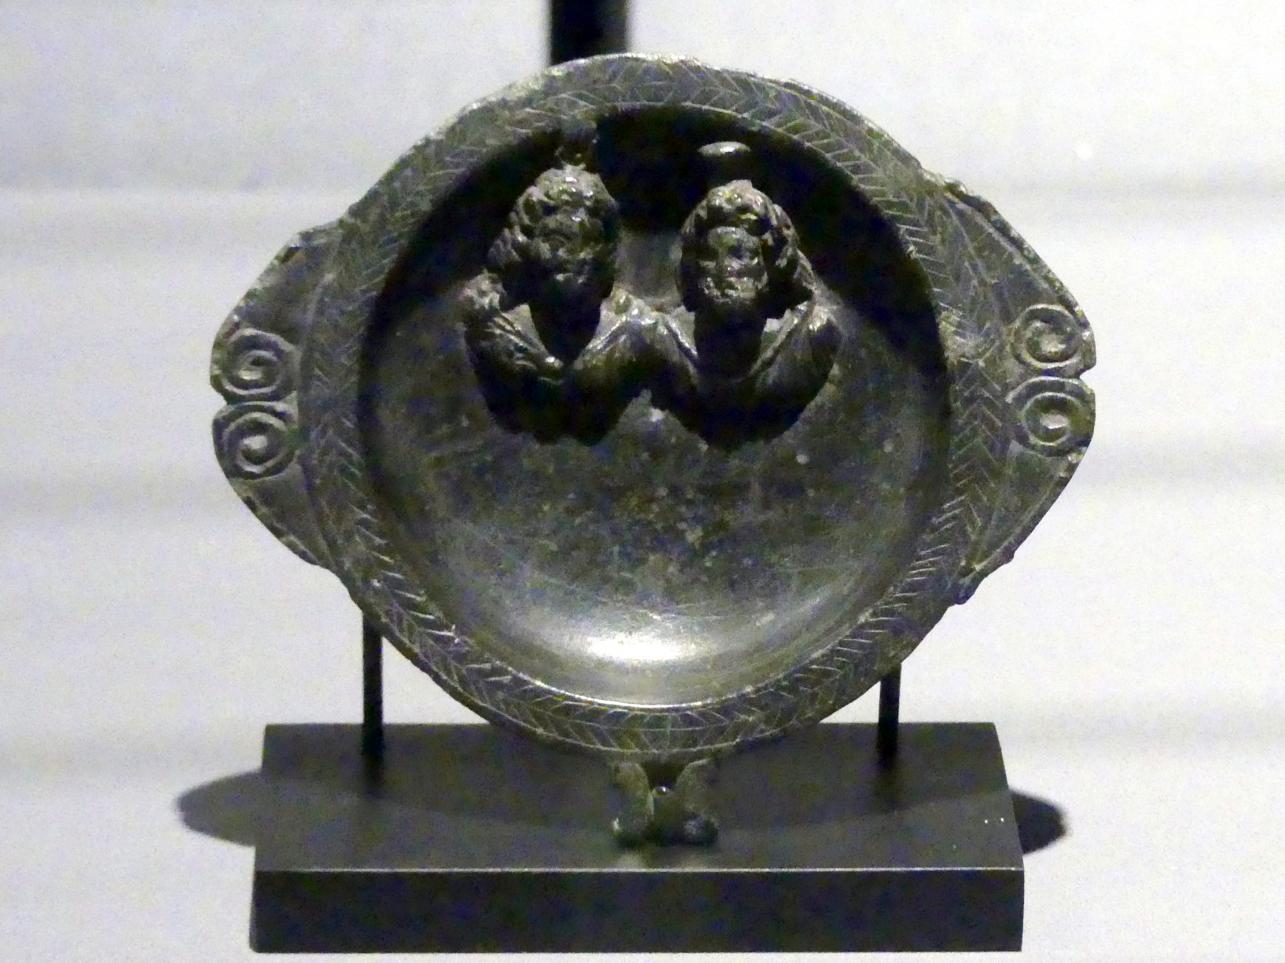 Schale mit Darstellung von Isis (links) und Sarapis, Römische Kaiserzeit, 27 v. Chr. - 54 n. Chr., 1 - 100, Bild 1/2